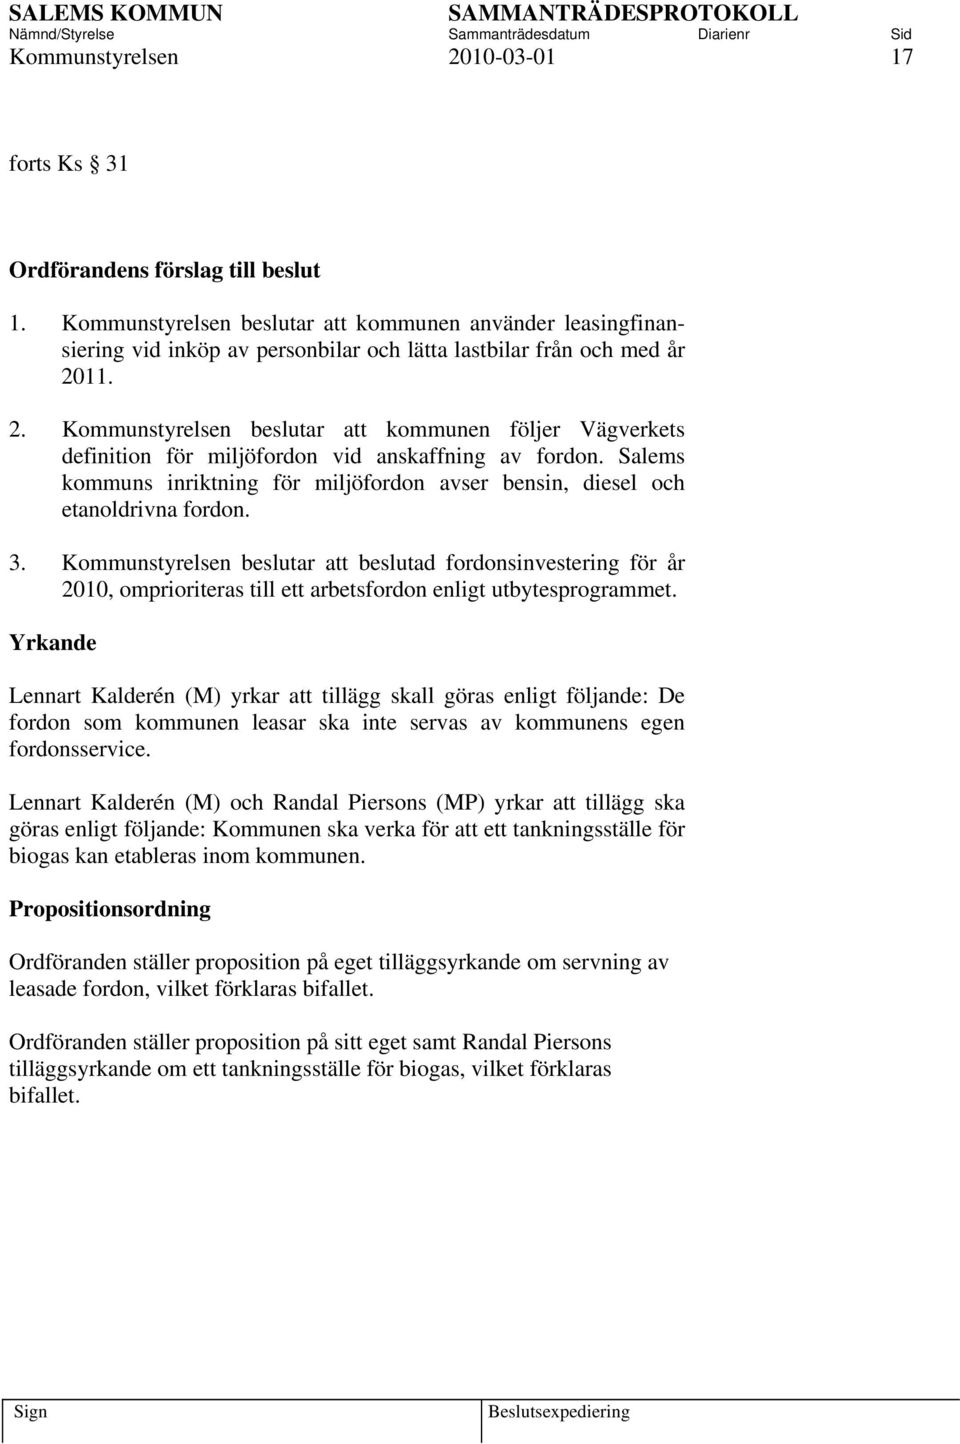 11. 2. Kommunstyrelsen beslutar att kommunen följer Vägverkets definition för miljöfordon vid anskaffning av fordon.